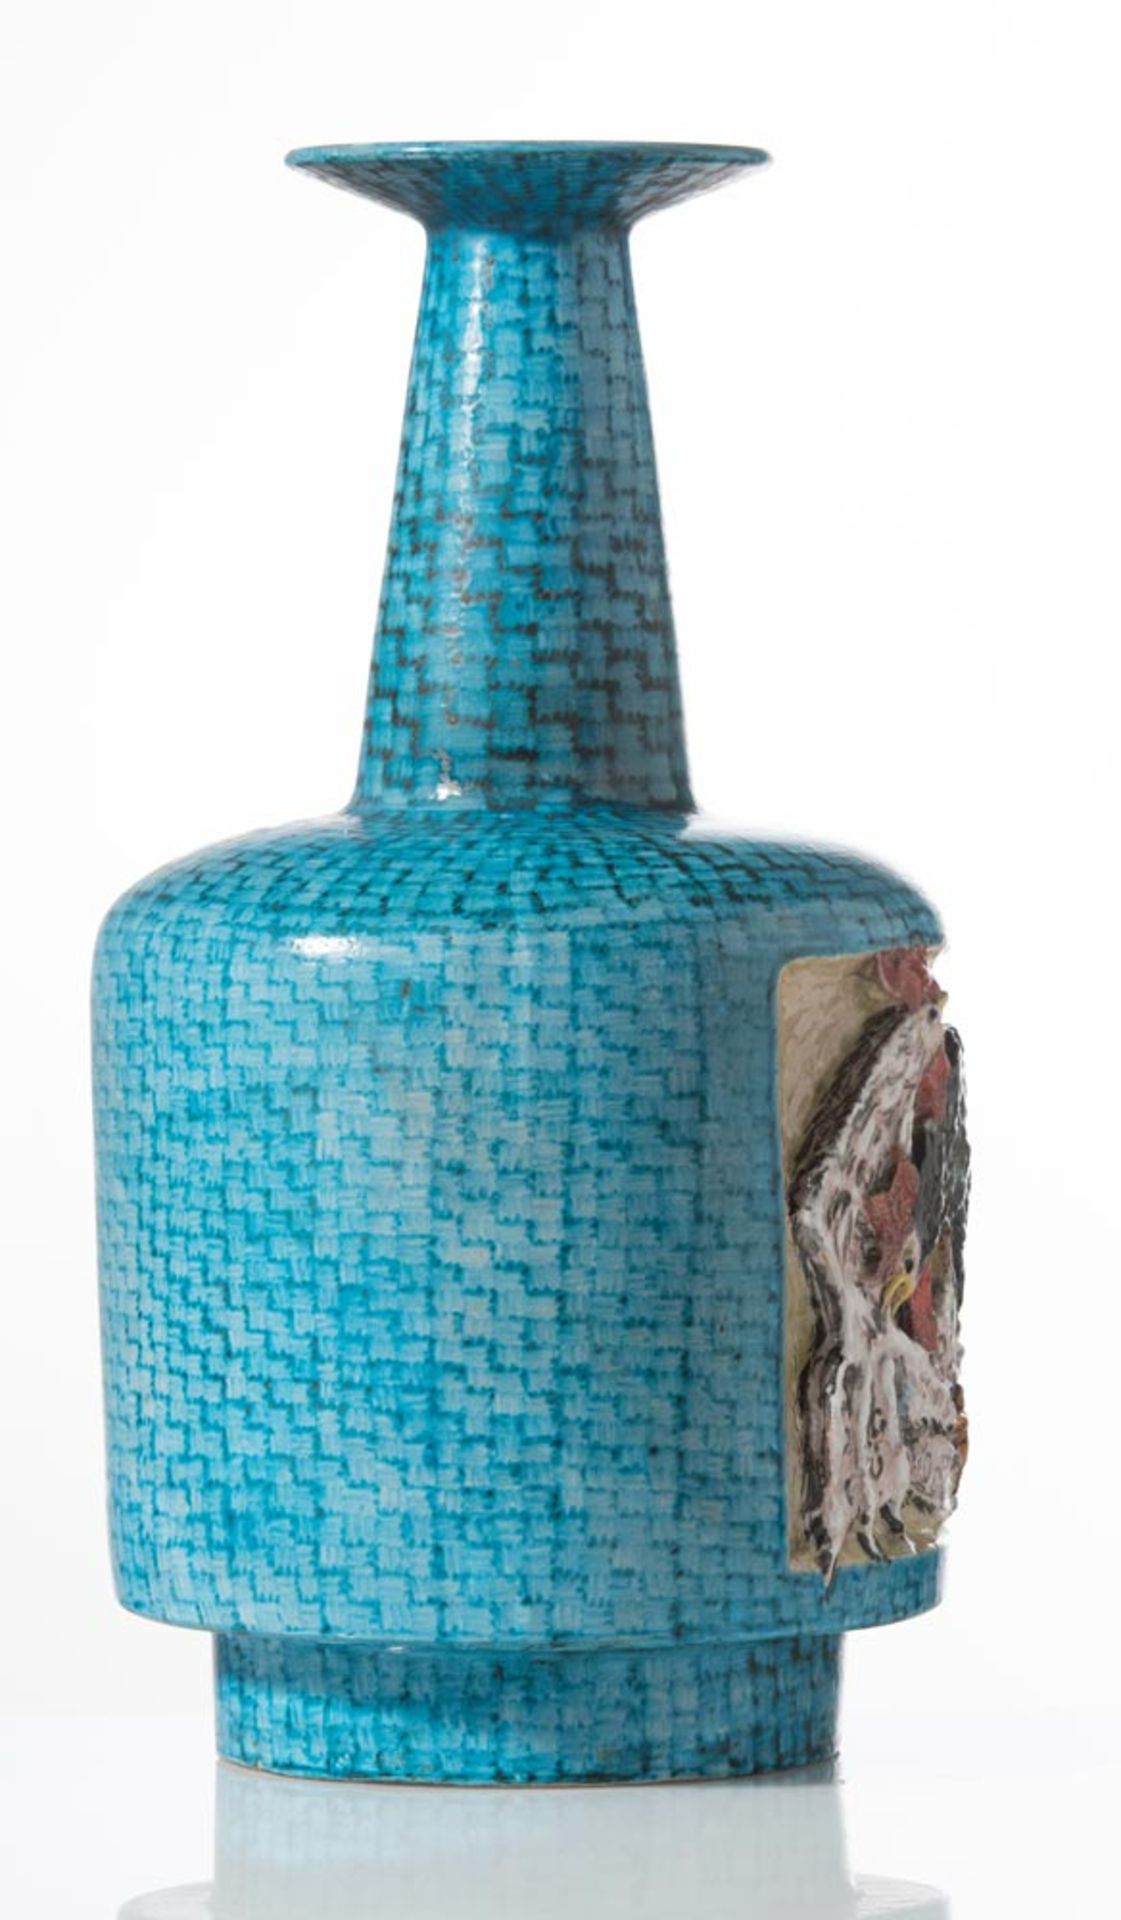 Ceramic vase, Manufacture Minghetti, 1950s, "Combattimento di Galli" - Image 2 of 2